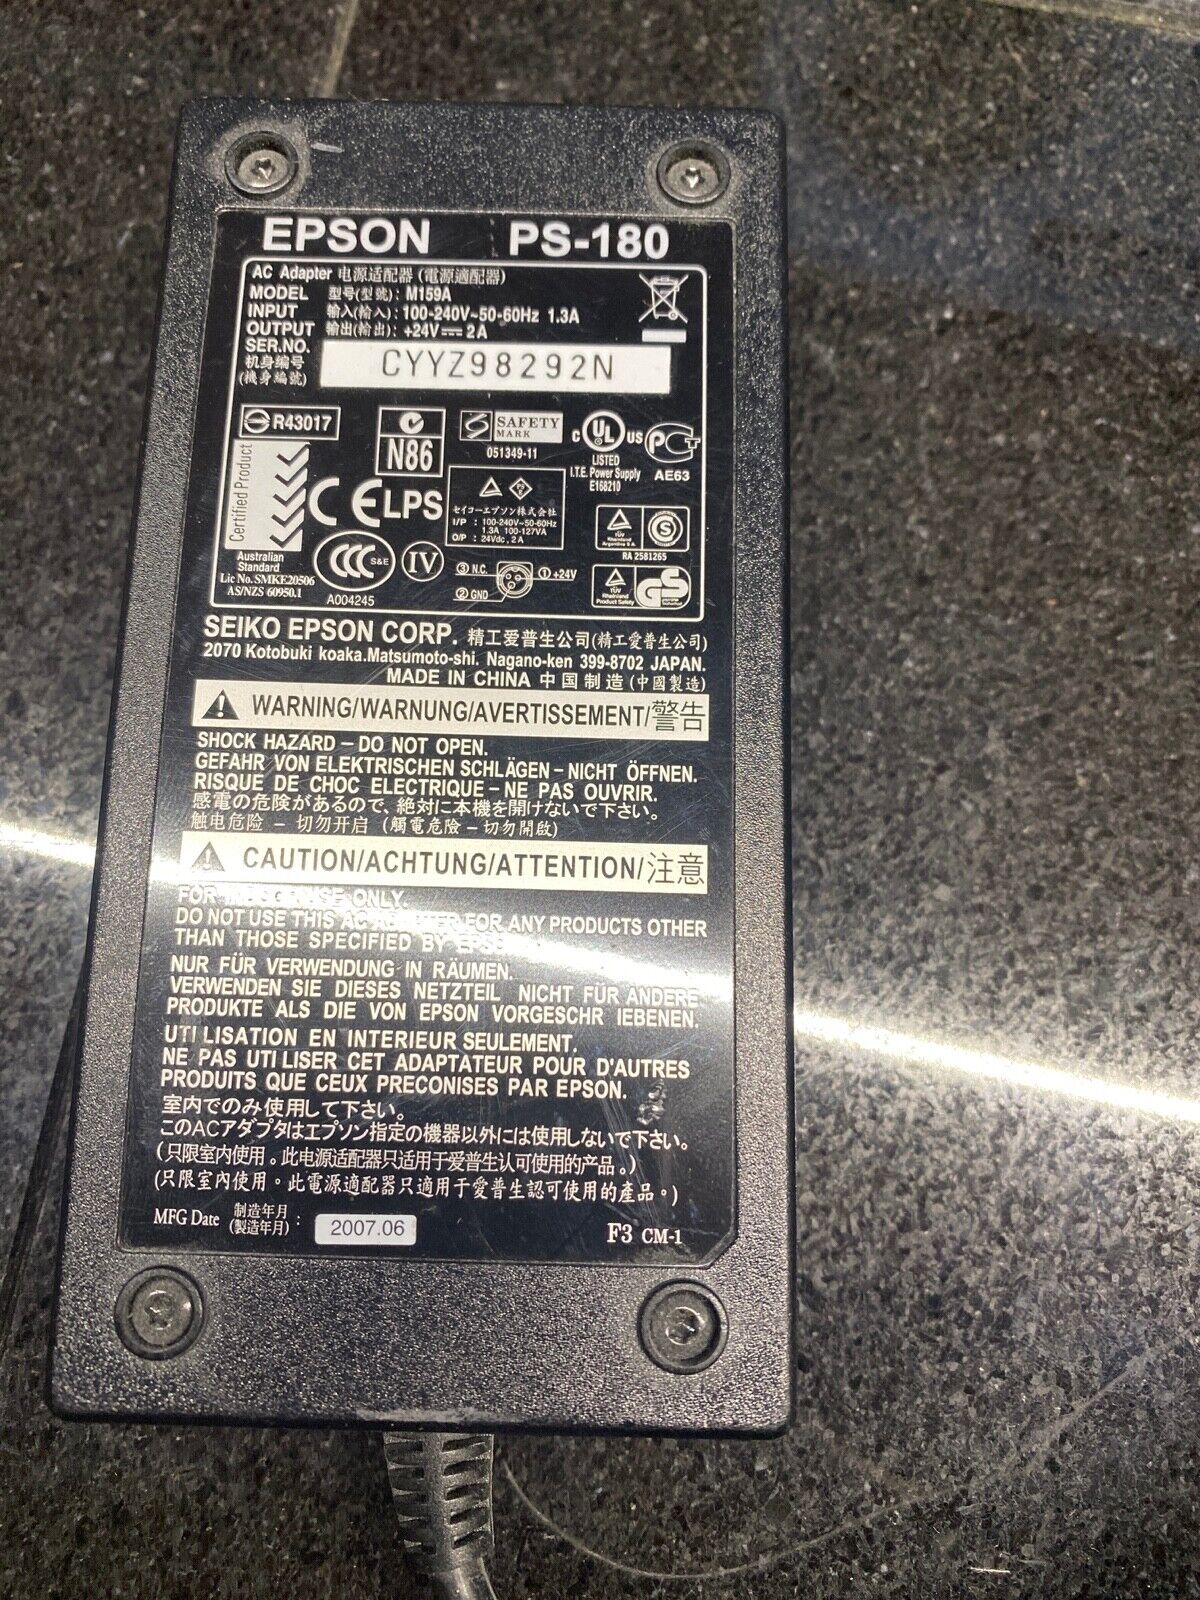 Epson PS-180 M159A AC Adapter Power Supply 24V 2A M159A M159A +24V 2A 110V